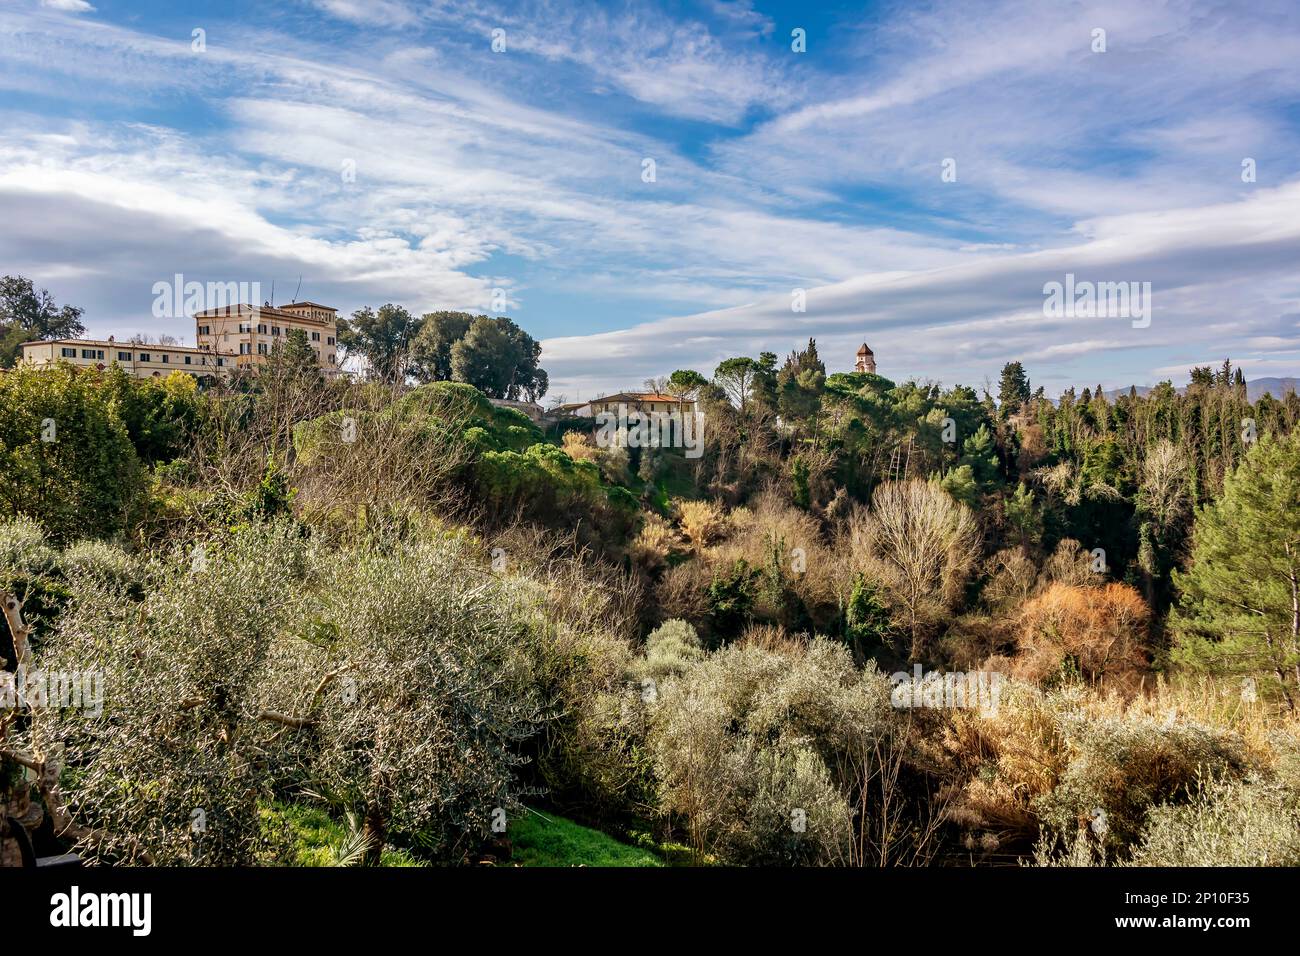 Splendida vista panoramica sulla natura che circonda il centro storico di Fauglia, Pisa, Italia Foto Stock